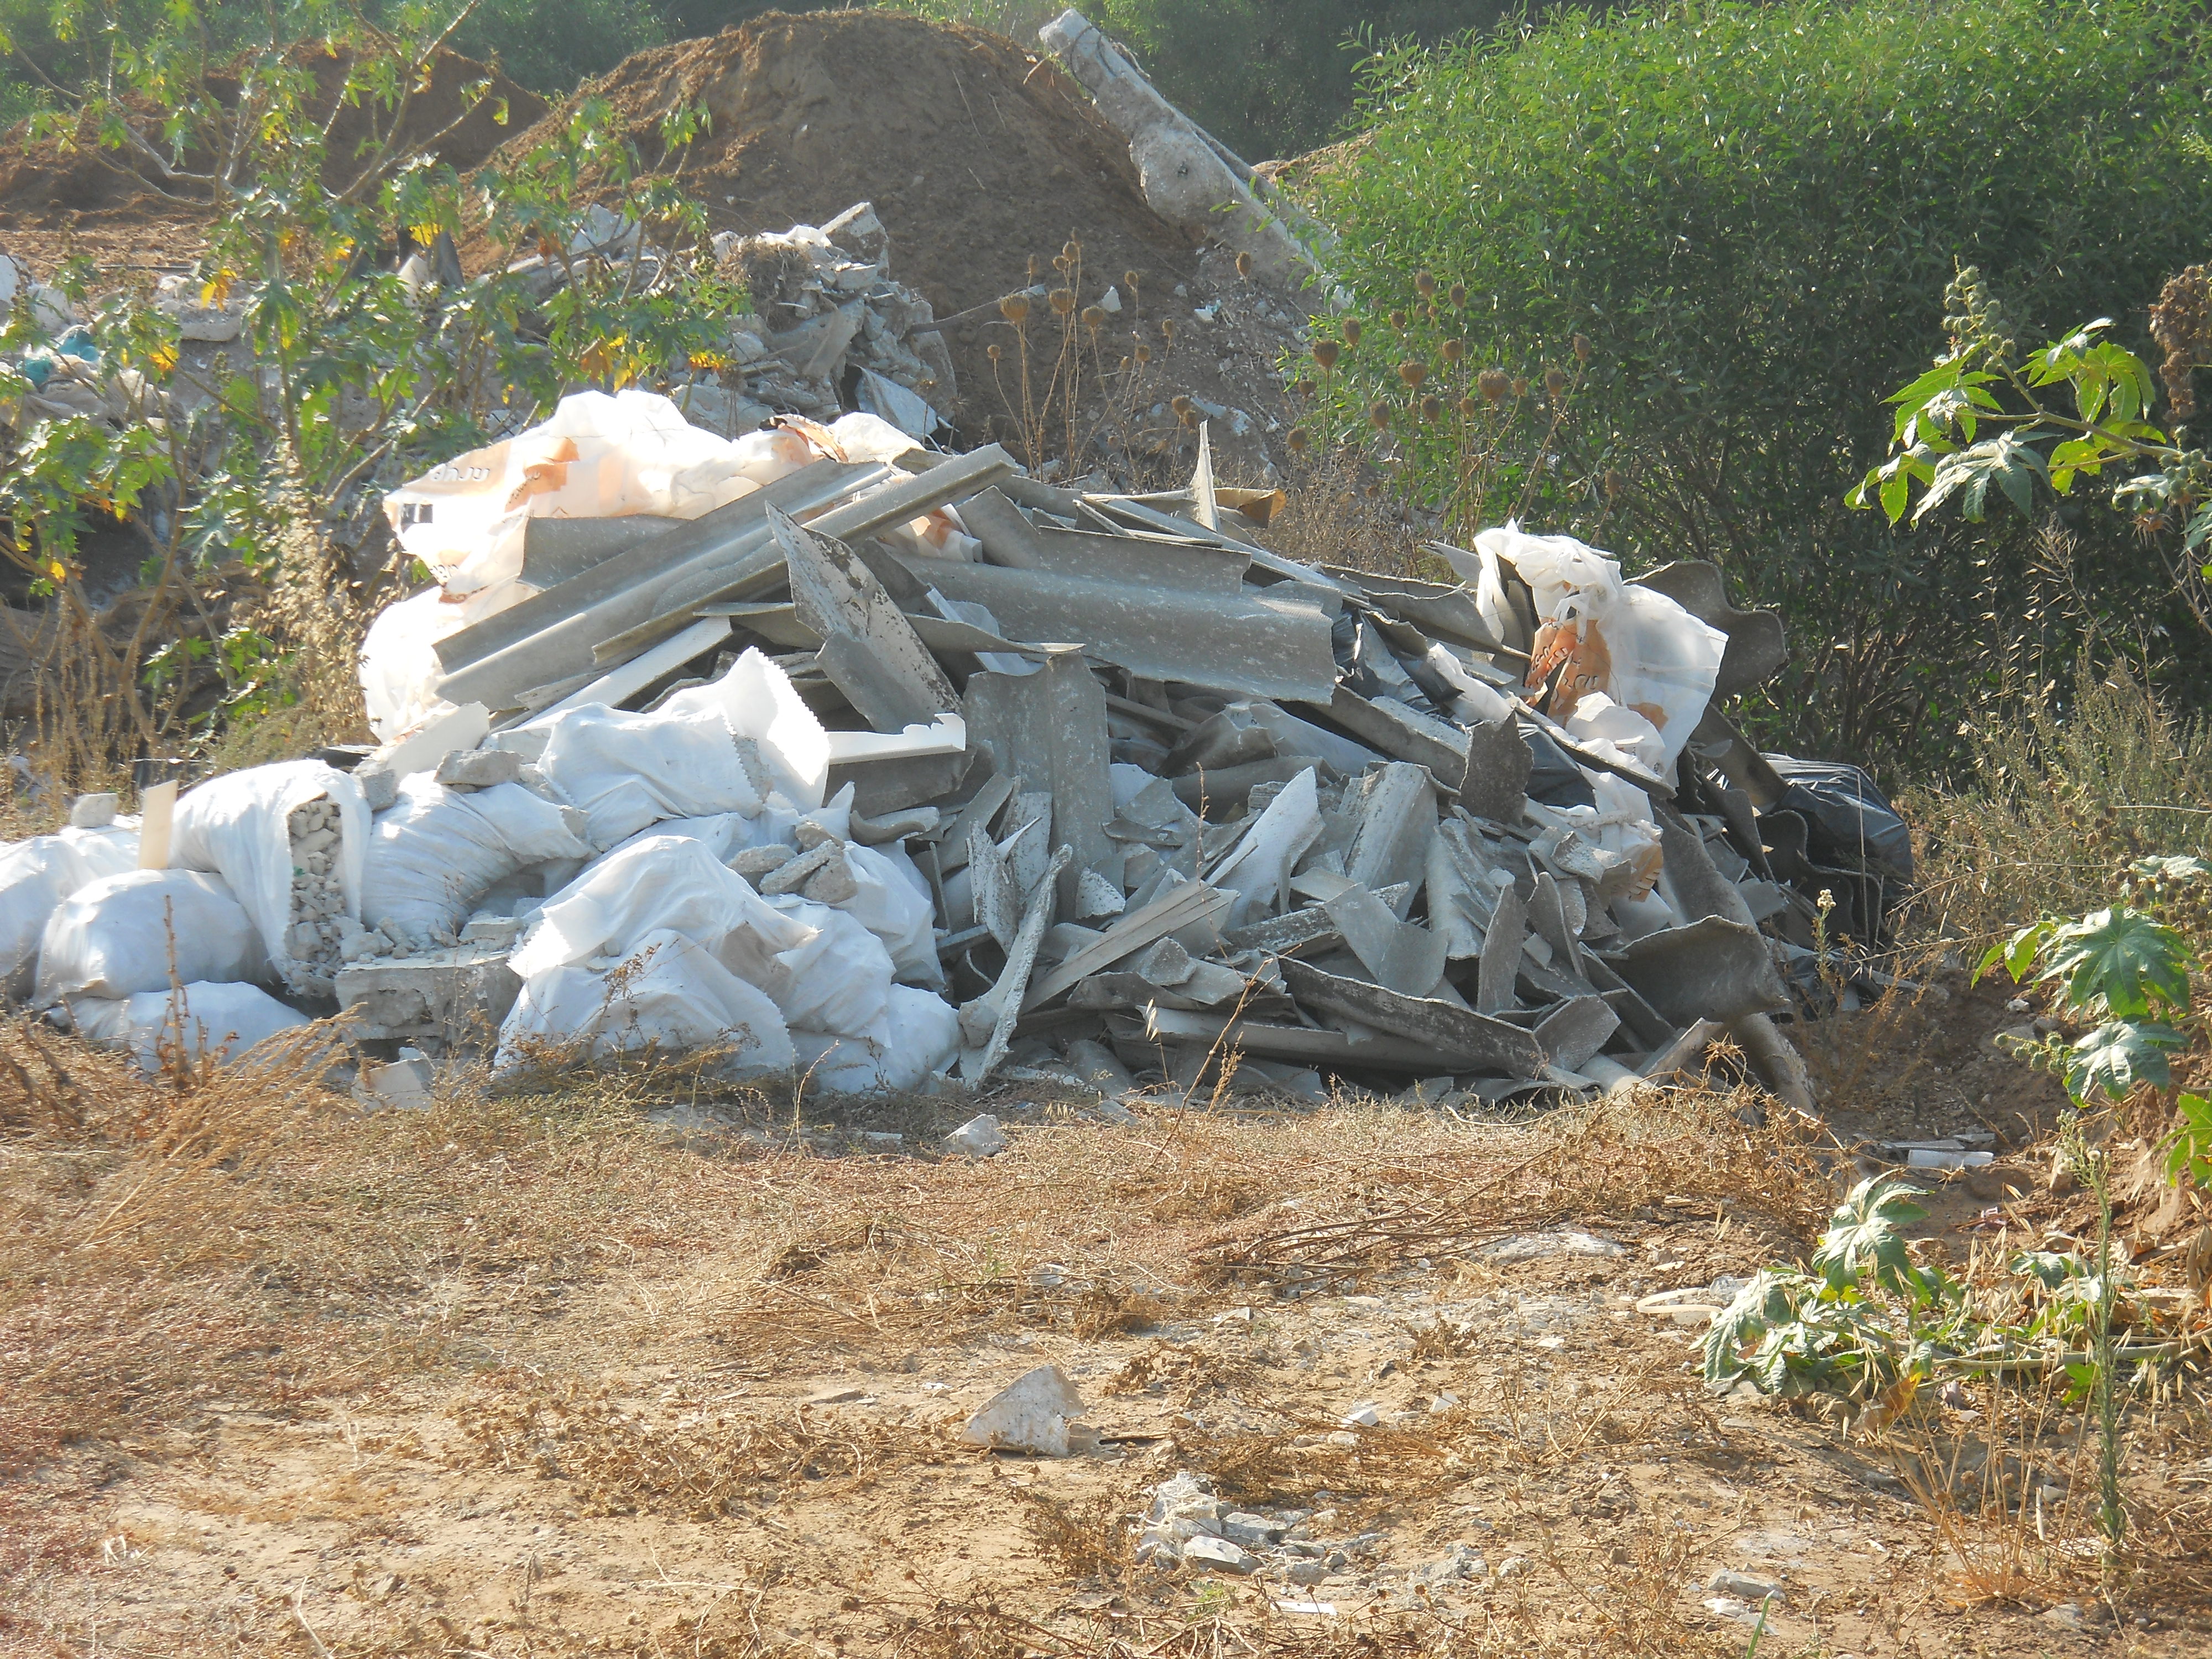 אתר סילוק פסולת לא חוקי. צילום המשטרה הירוקה המשרד להגנת הסביבה (3)